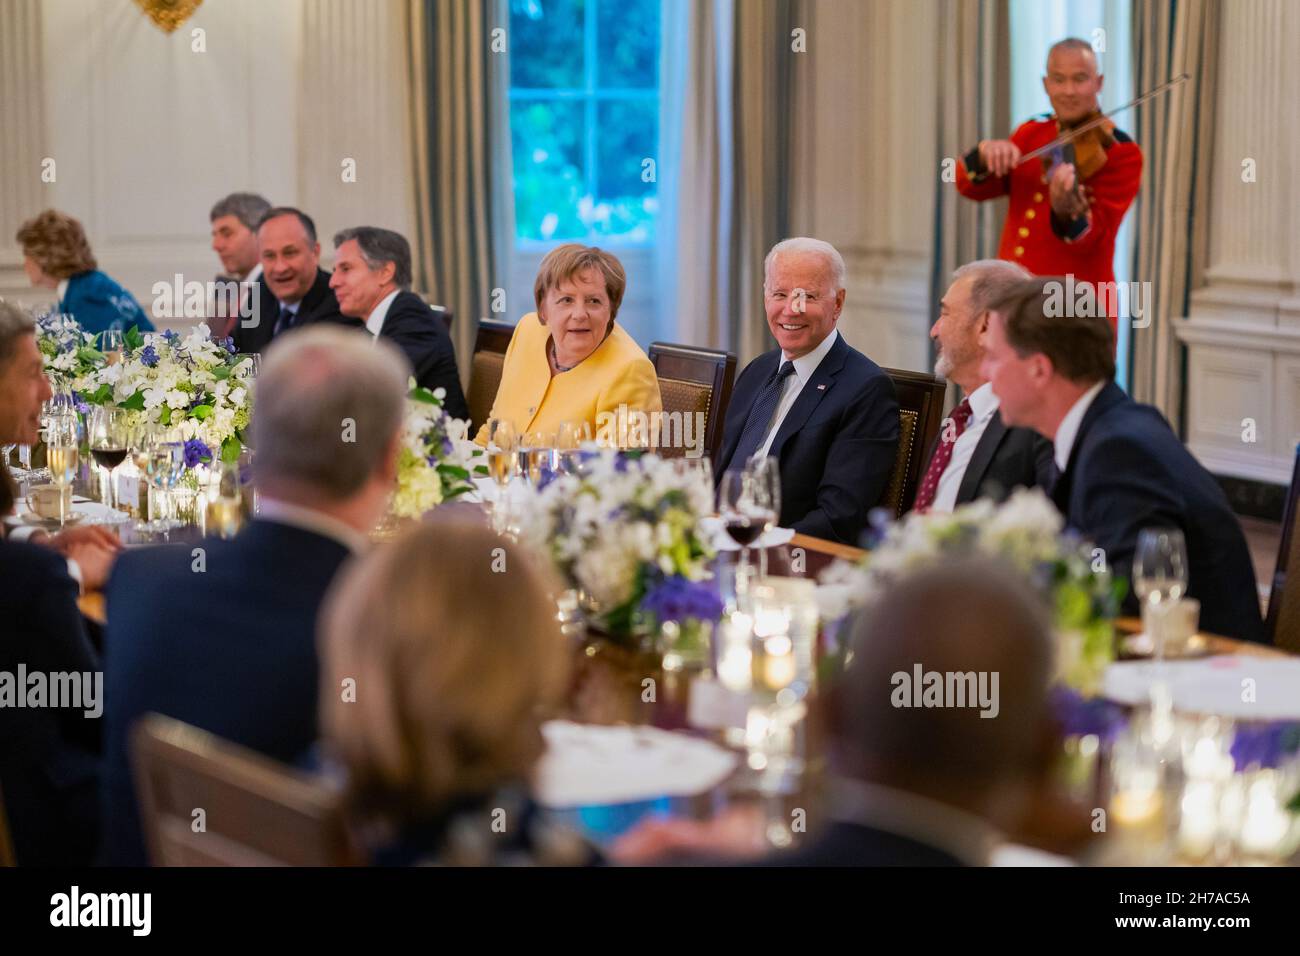 WASHINGTON DC, USA - 15. Juli 2021 - US-Präsident Joe Biden und First Lady Jill Biden, zusammen mit Vizepräsident Kamala Harris, zweiter Gentleman Douglas Stockfoto